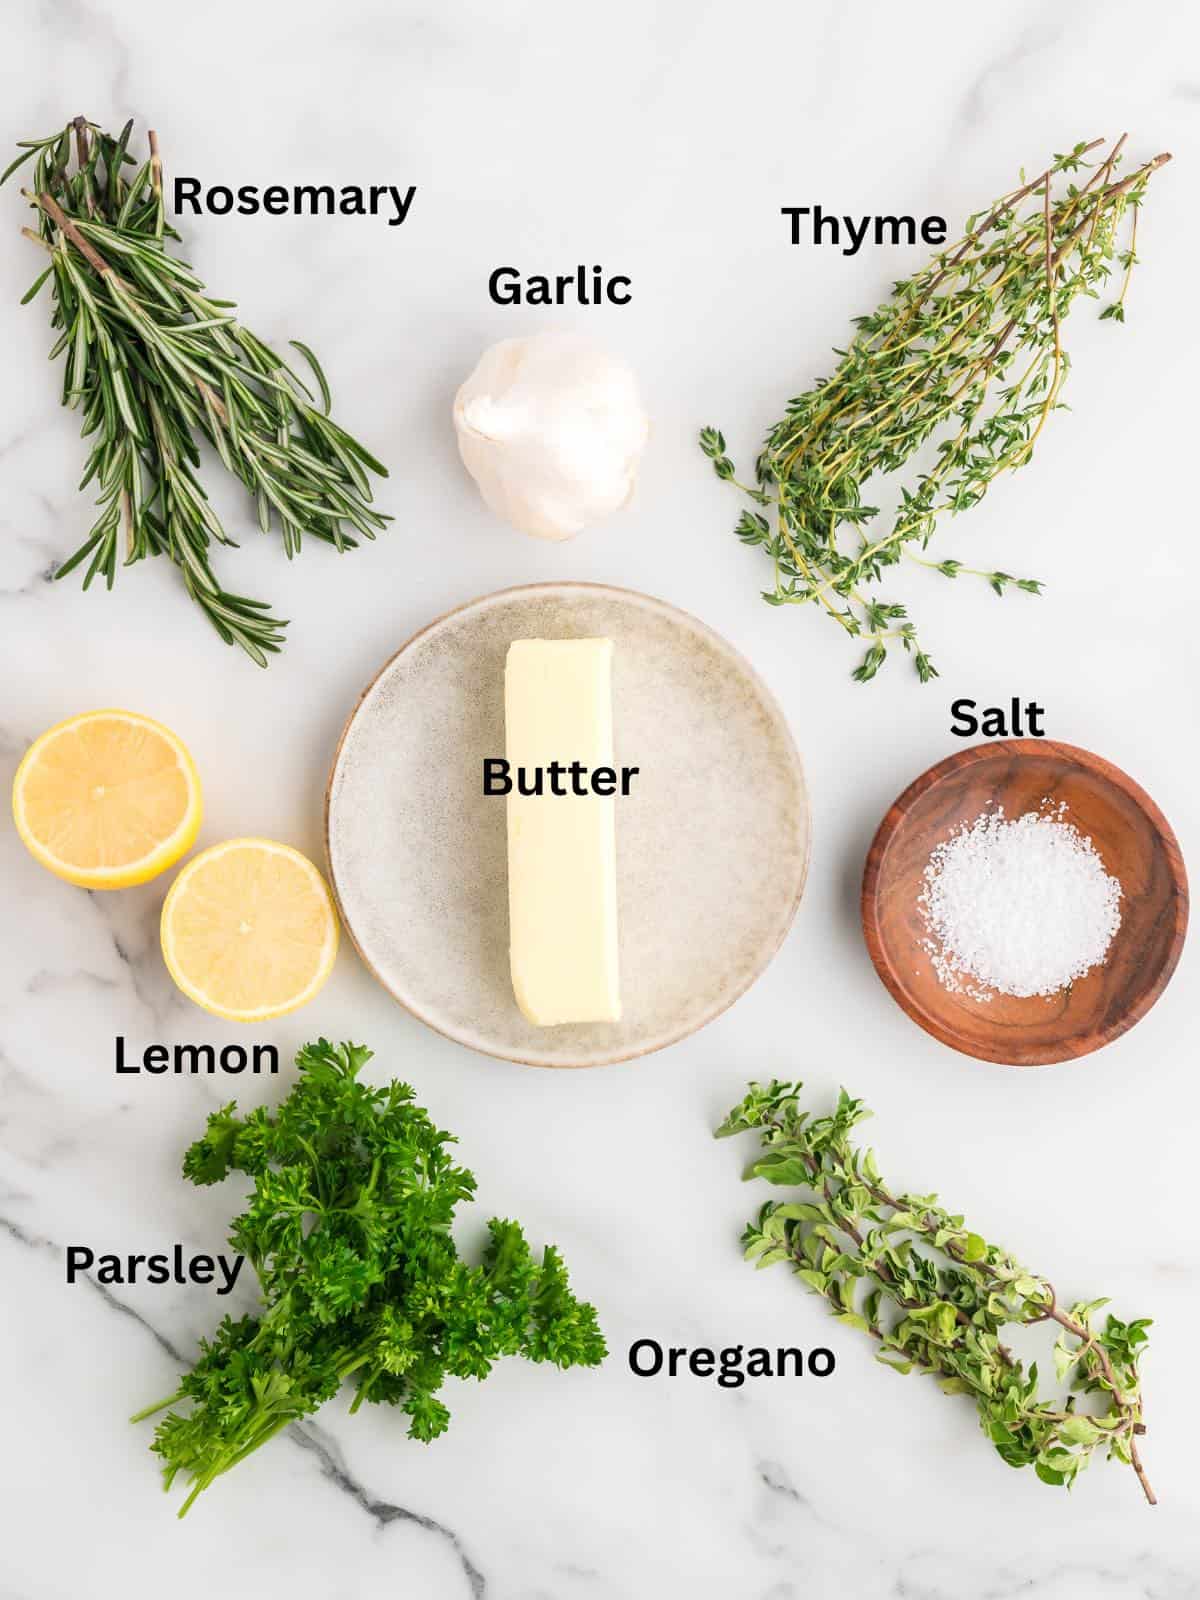 A stick of butter, fresh herbs, lemons and salt to make garlic herb butter.